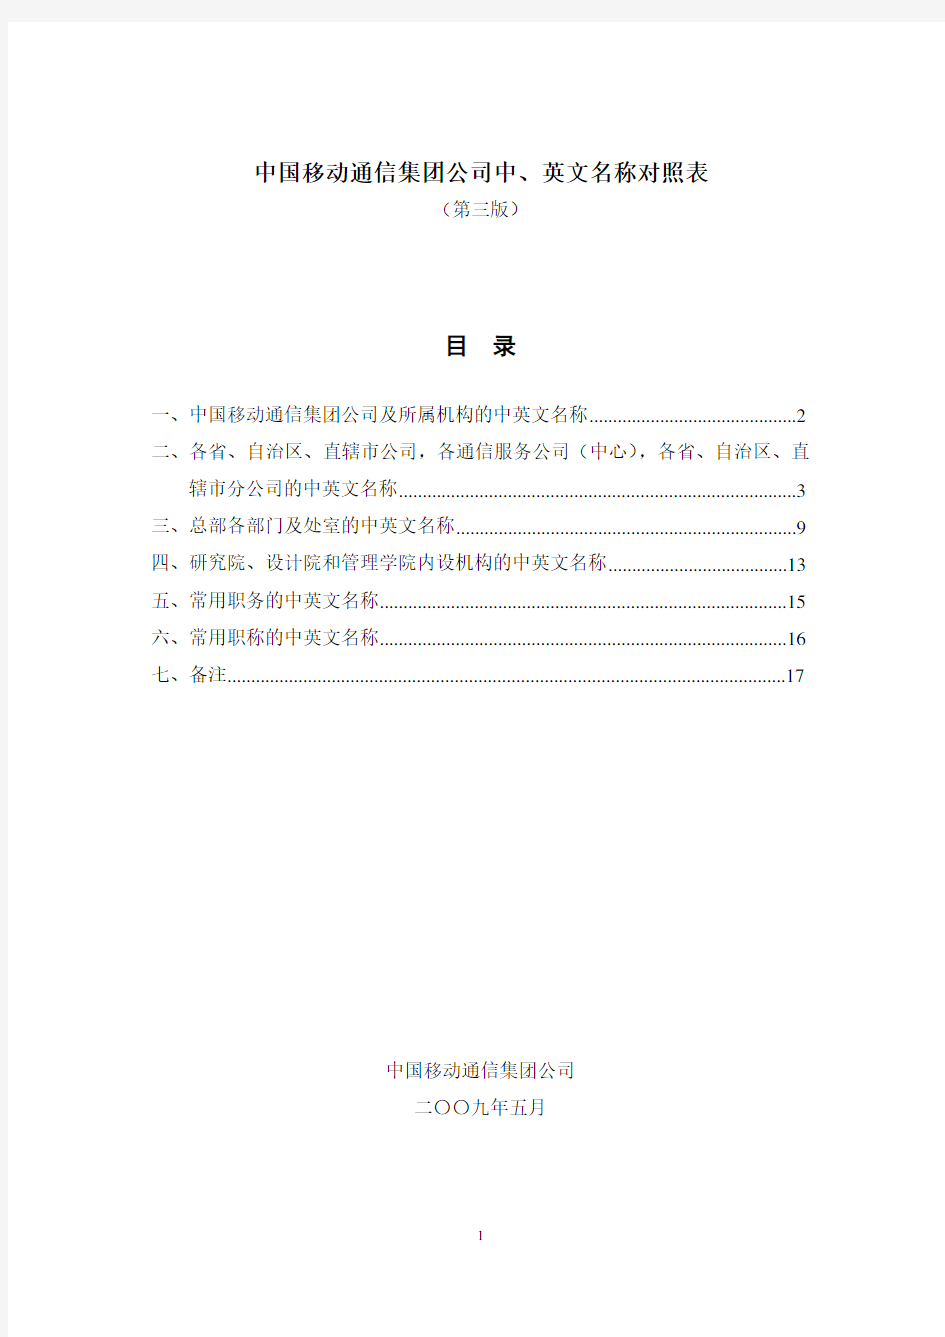 中国移动通信集团公司中、英文名称对照表(第三版)